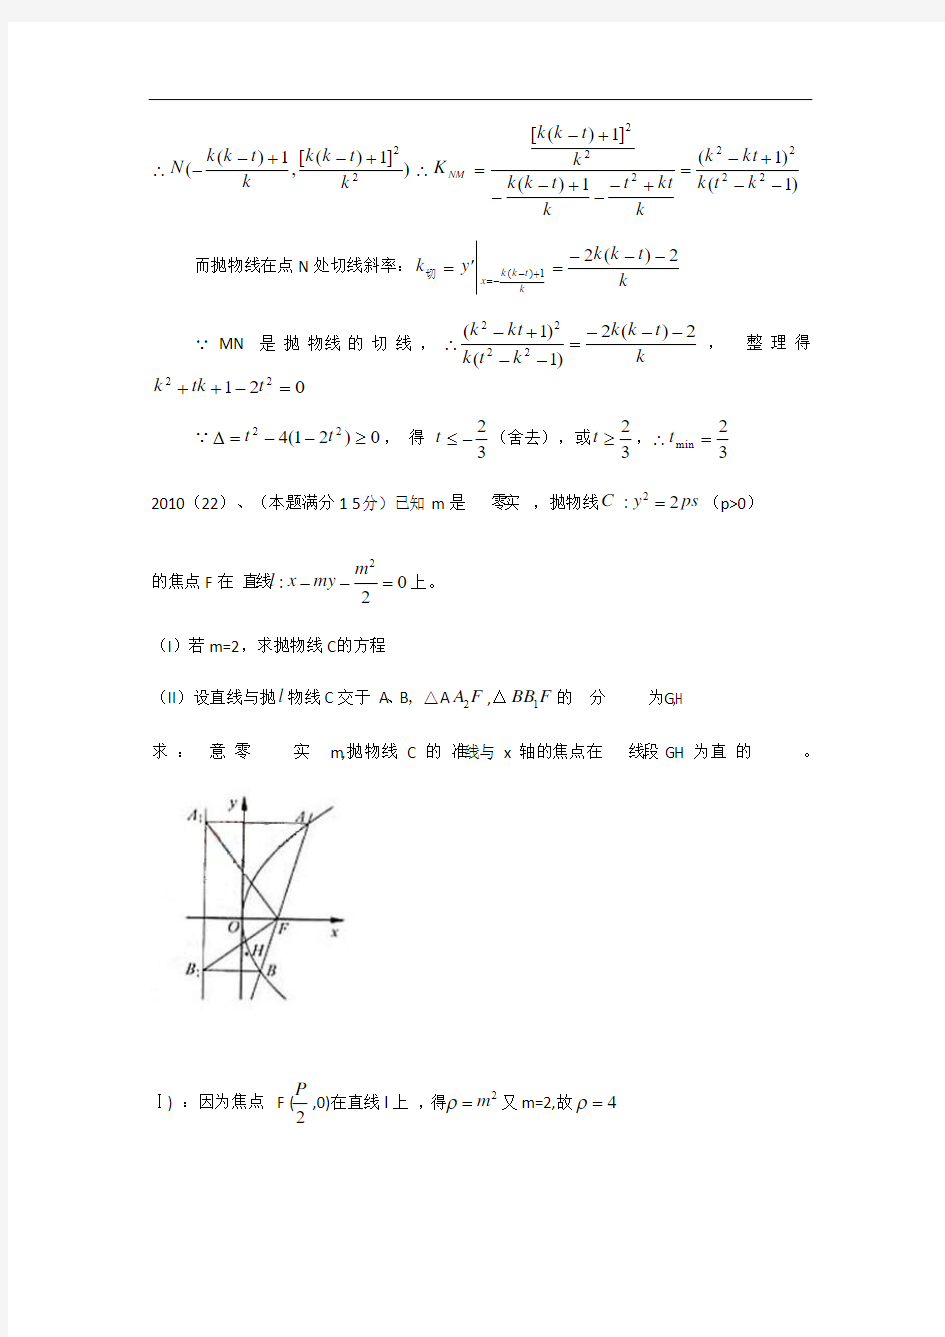 20092015年浙江高考文科数学解析几何大题(带答案)